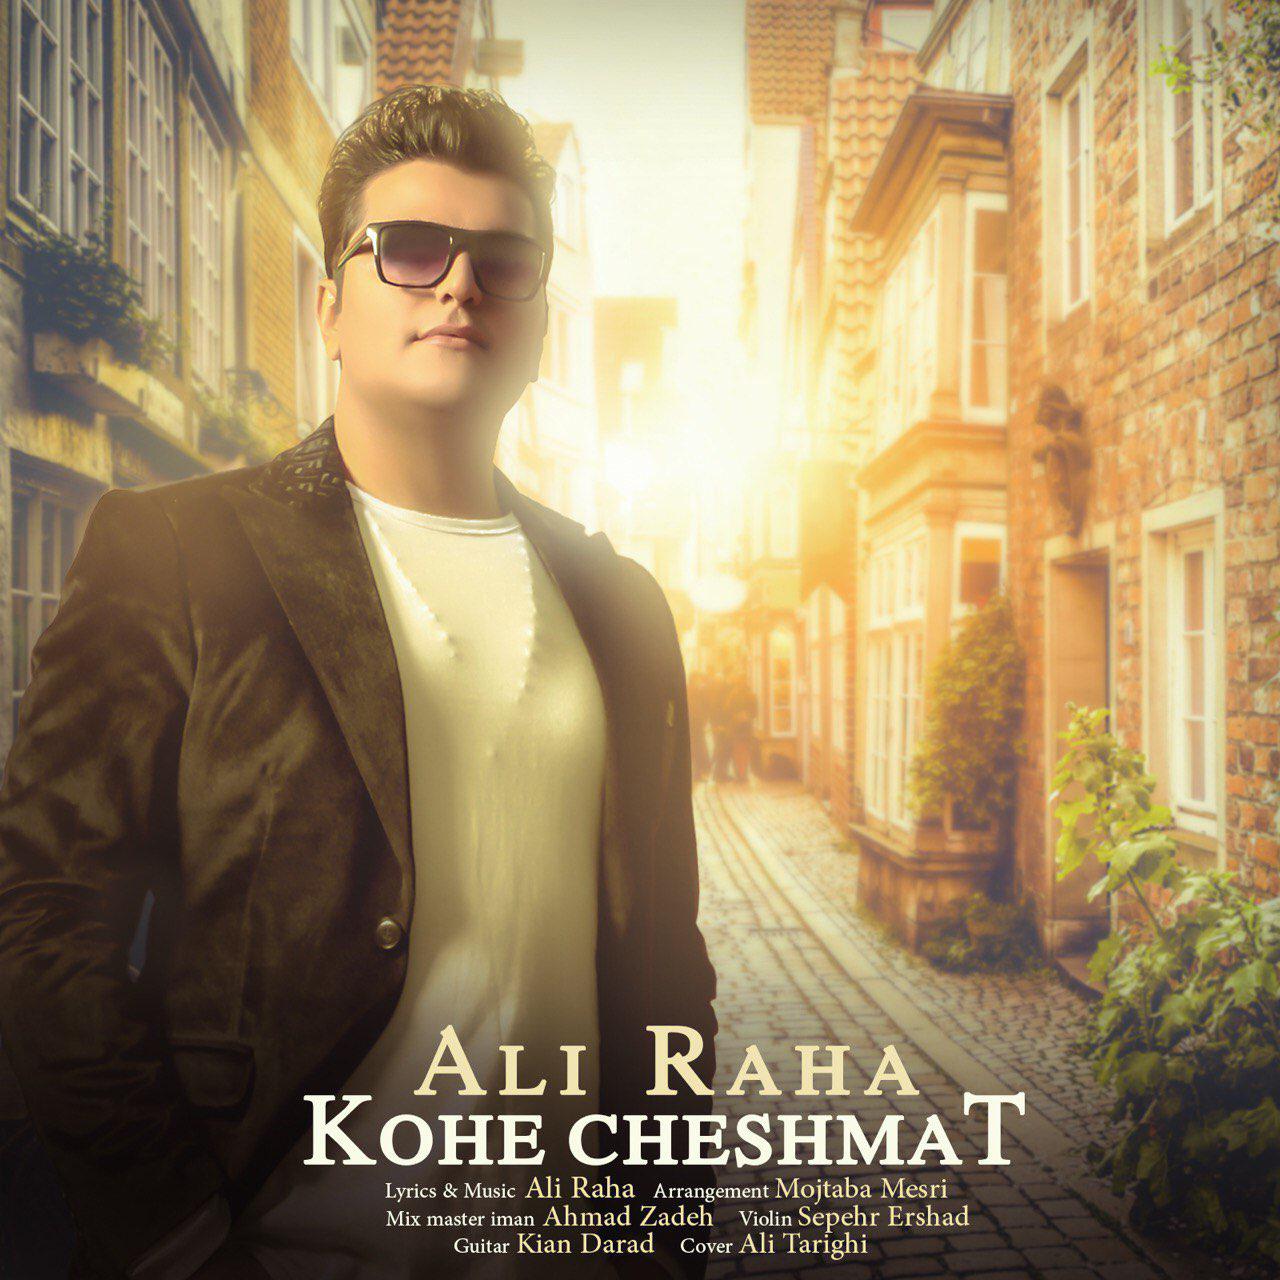  دانلود آهنگ جدید علی رها - کوه چشمات | Download New Music By Ali Raha - Kohe Cheshmat